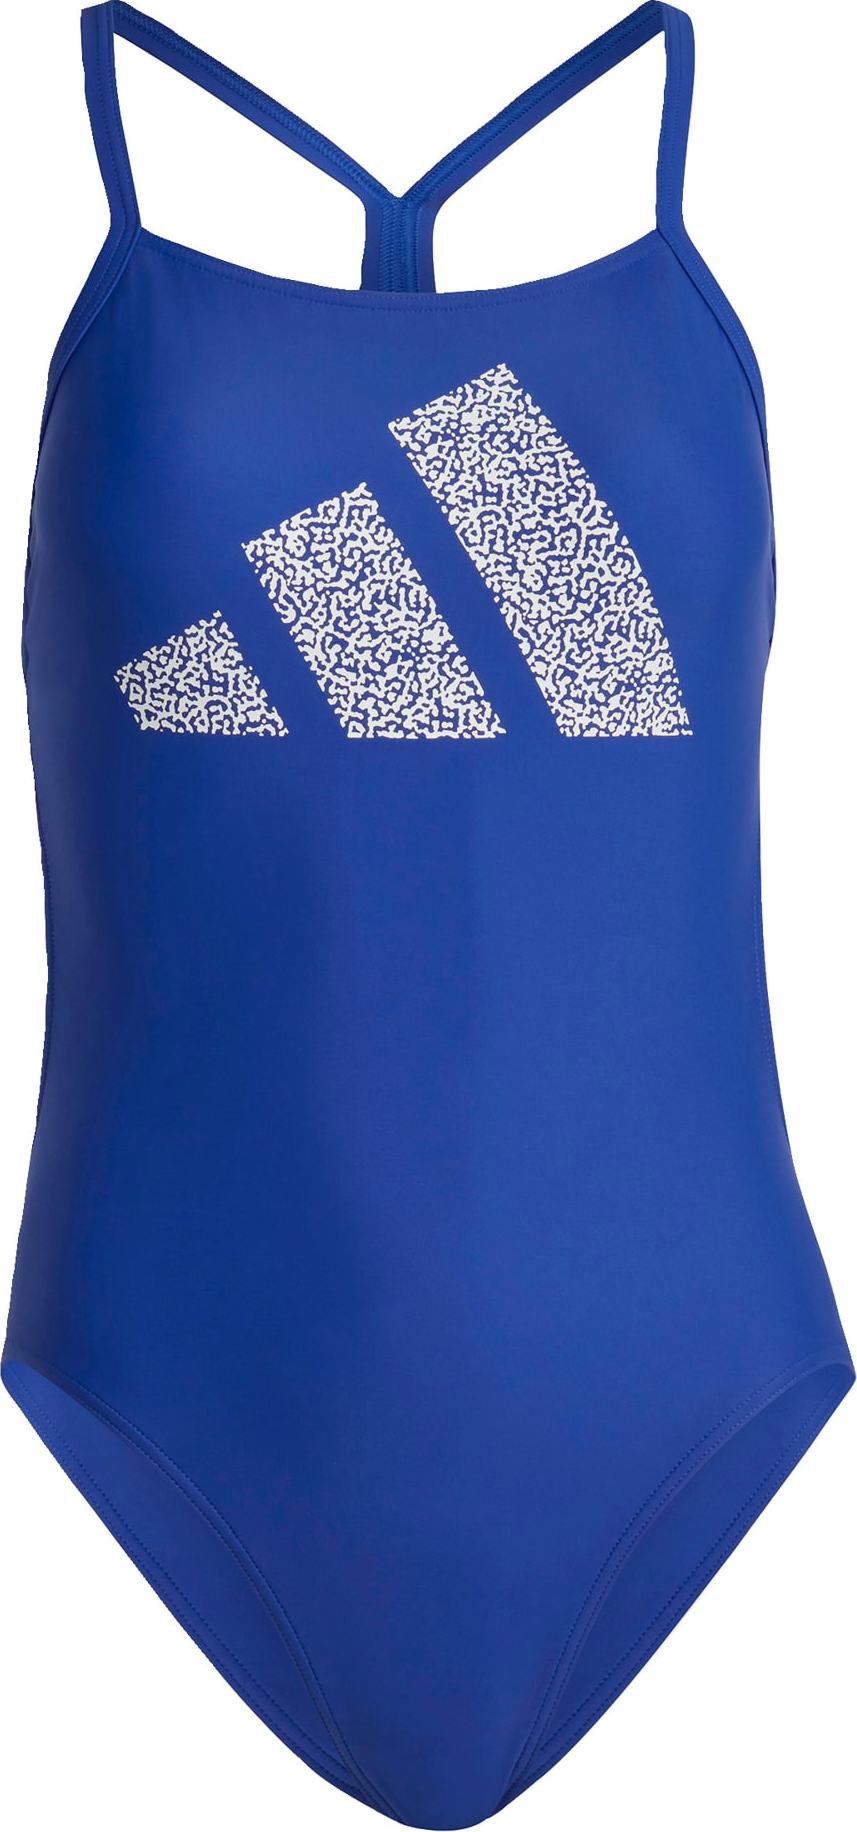 ADIDAS PERFORMANCE Sportovní plavky královská modrá / bílá